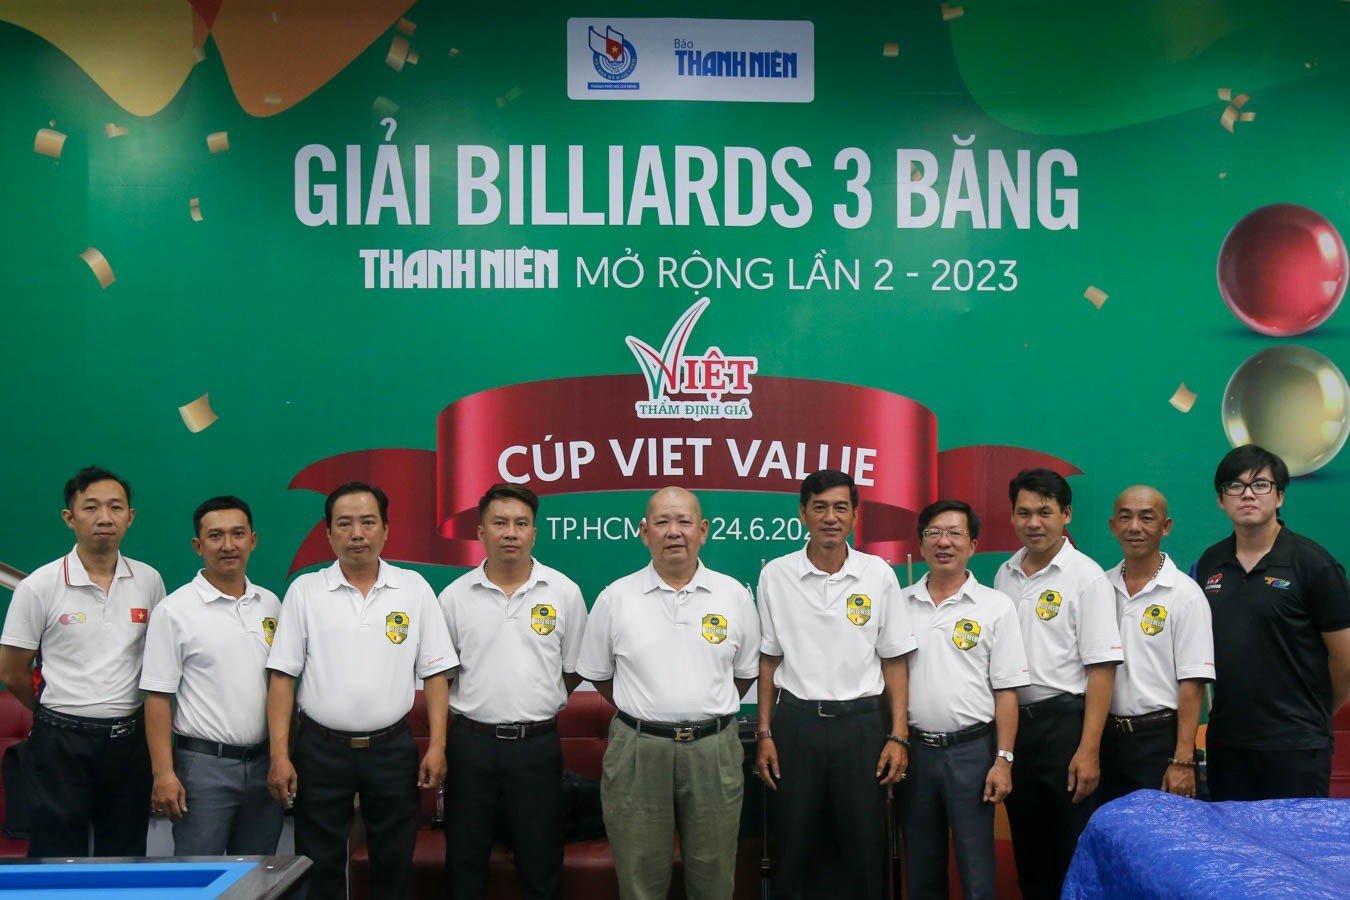 Bất ngờ lớn ở giải billiards 3 băng Thanh Niên mở rộng 2023 - Ảnh 7.